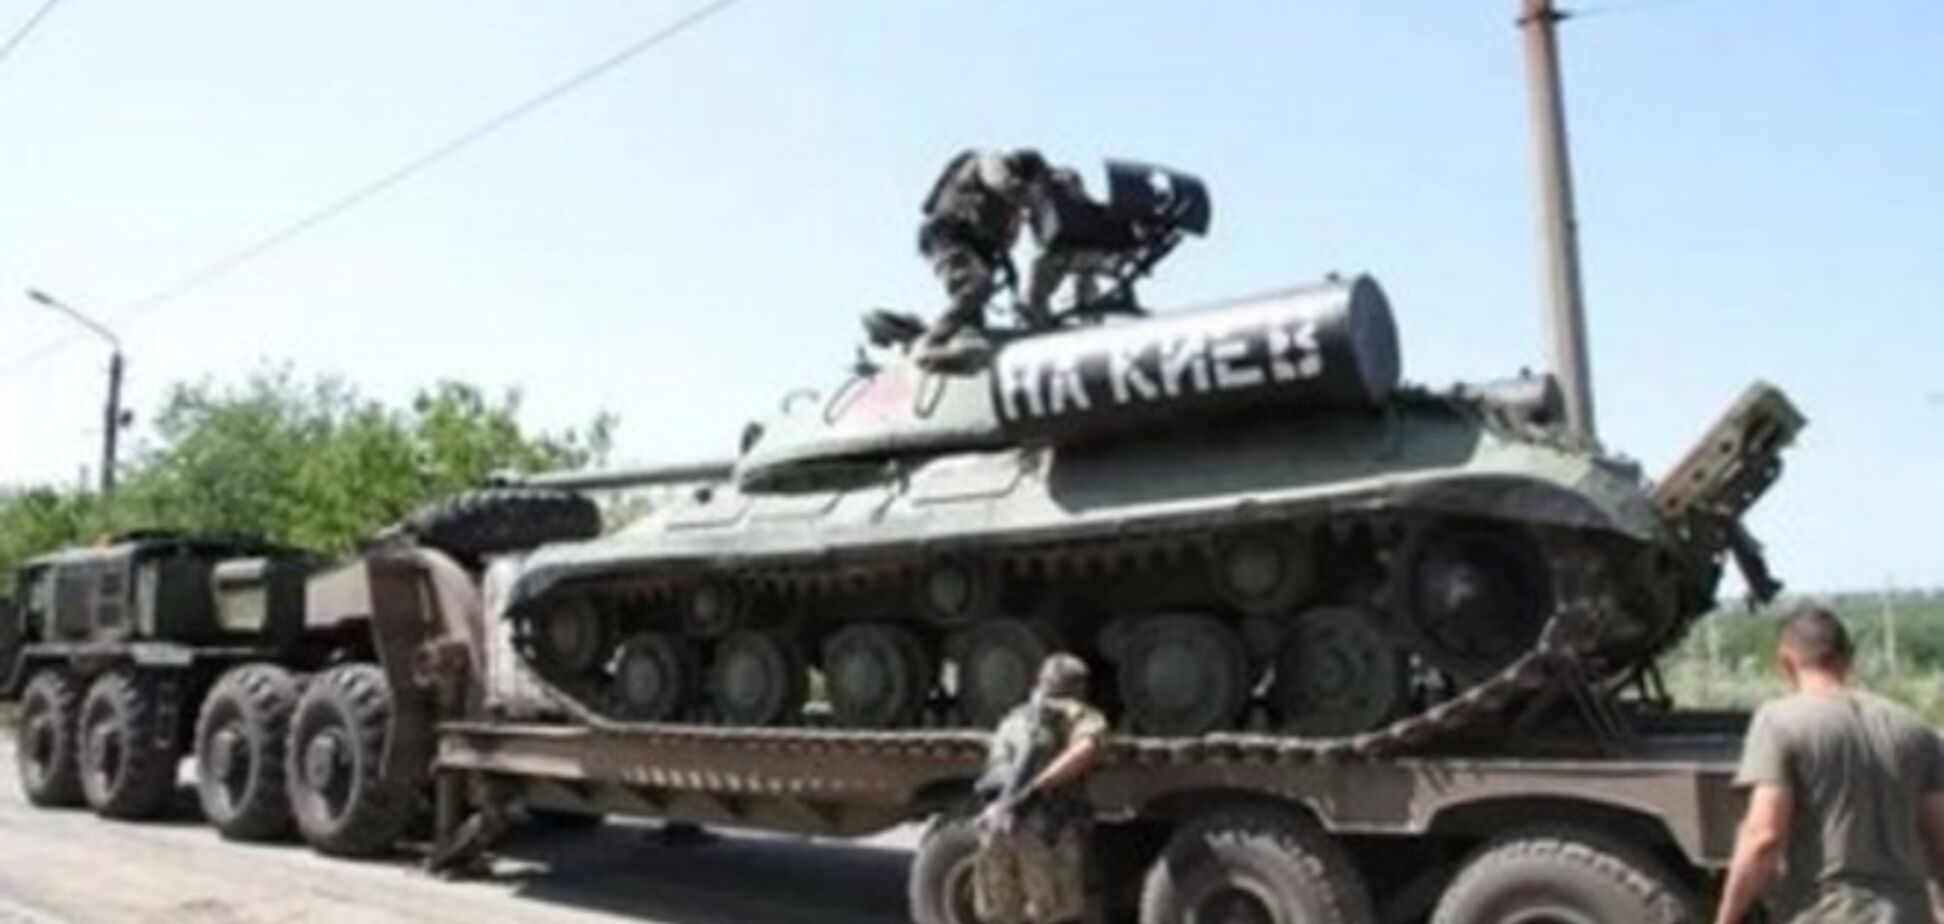 Бойцы АТО нашли украденный террористами с постамента советский танк